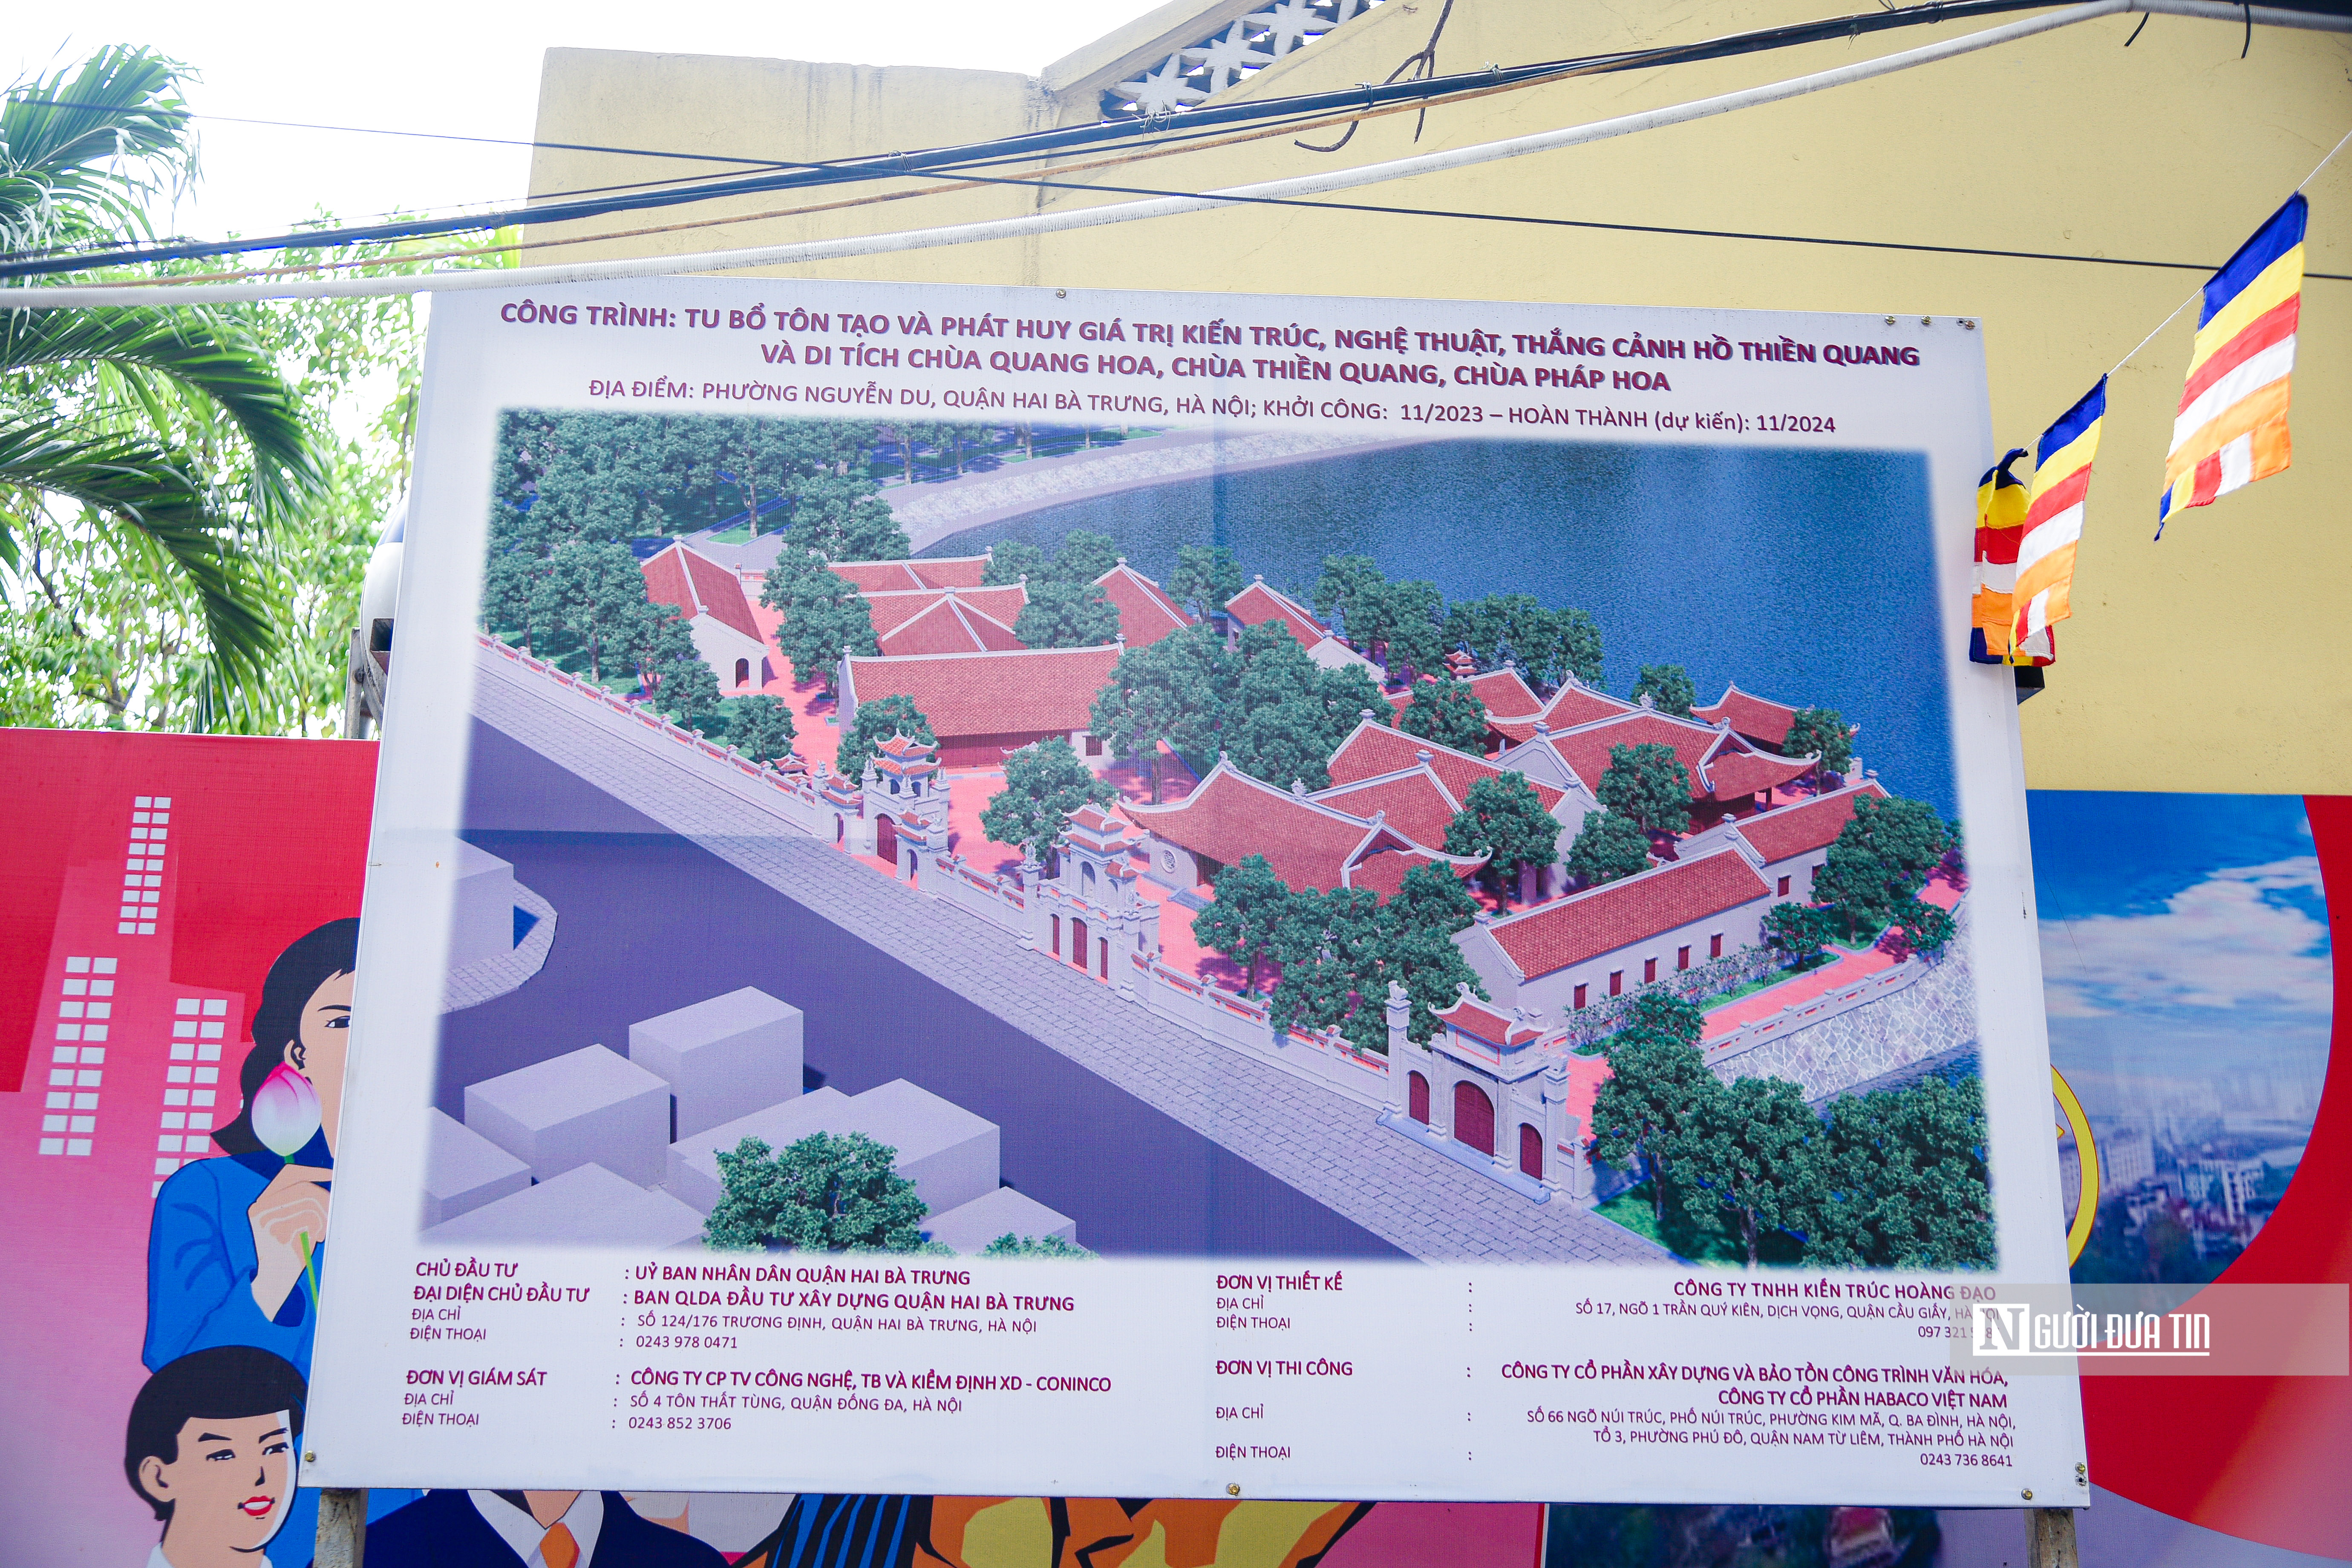 Xã hội - Hiện trạng hồ Thiền Quang trước đề xuất làm 5 quảng trường xung quanh (Hình 9).